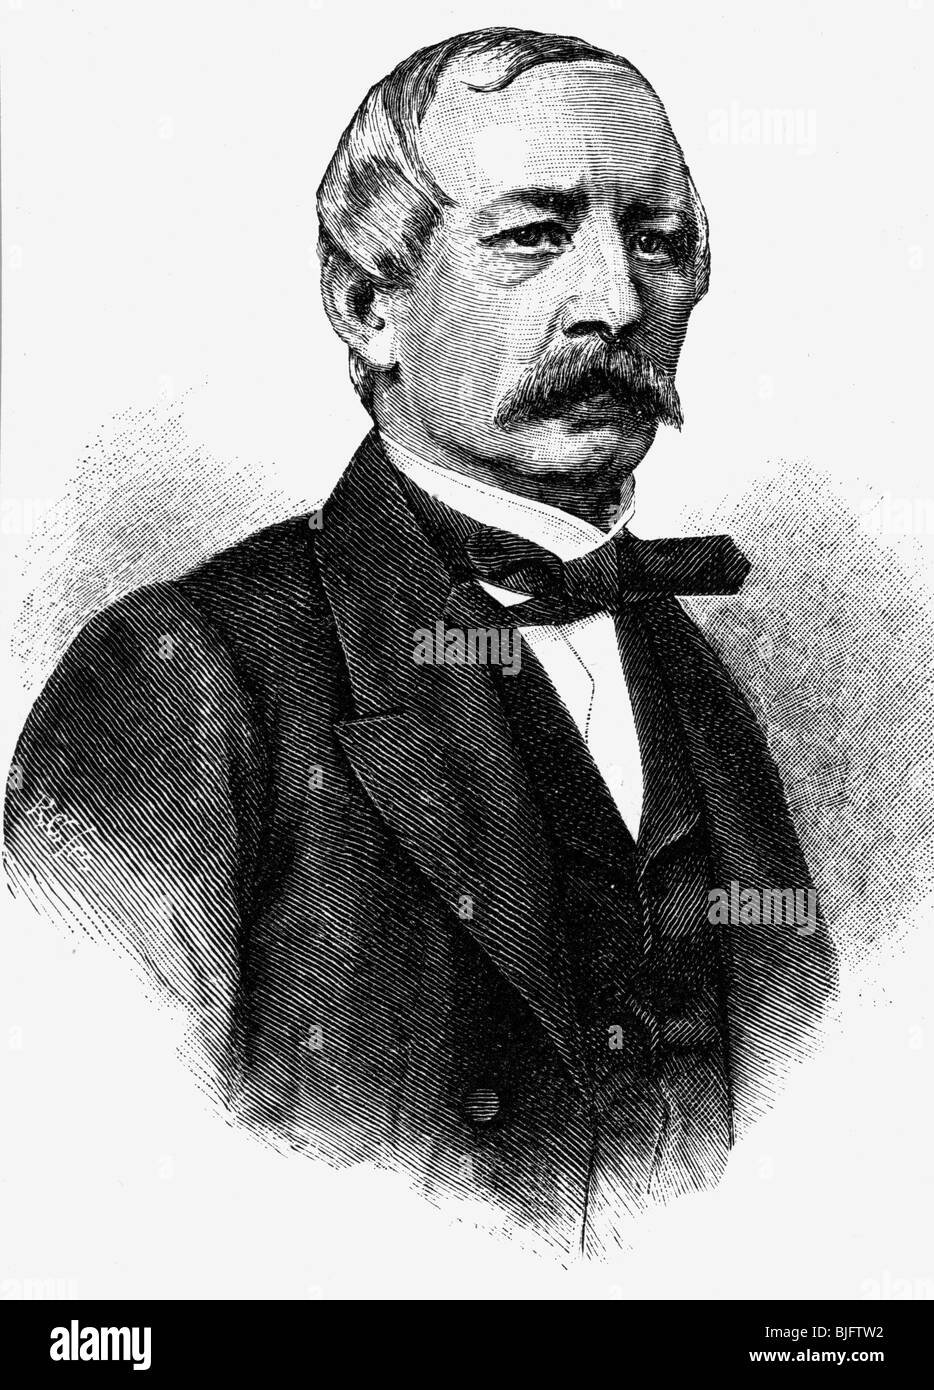 Goltz, Robert Graf von der, 6.6.1817 - 24.6.1869, Prussian diplomat, ambassador in Paris 1863 - 1869, portrait, wood engraving, 19th century, , Stock Photo